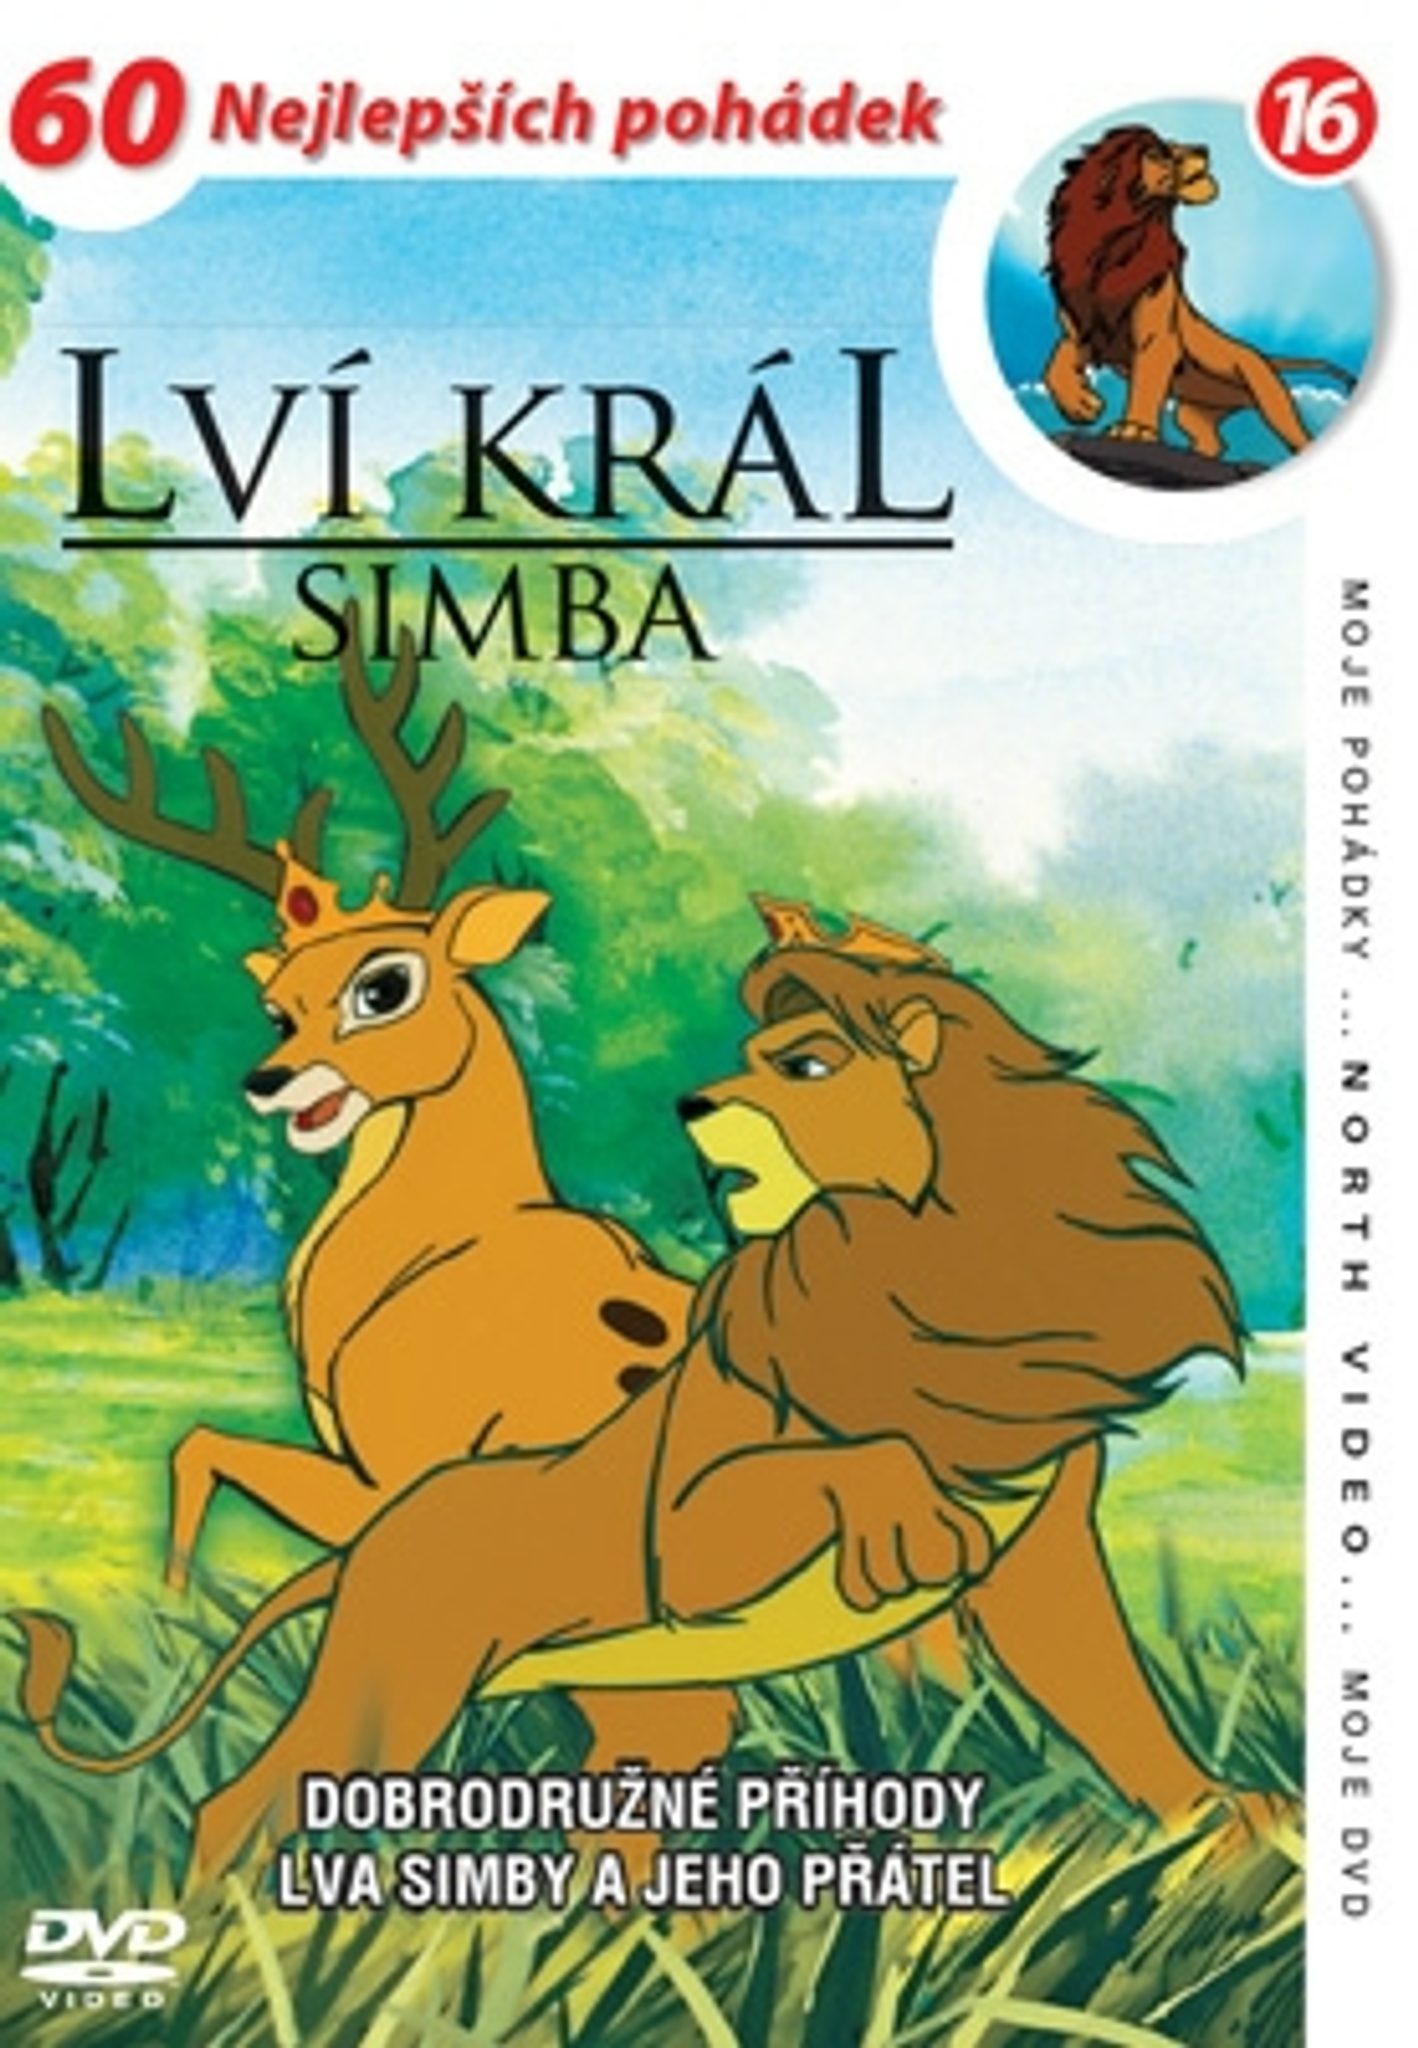 DVD Lví král - Simba 16